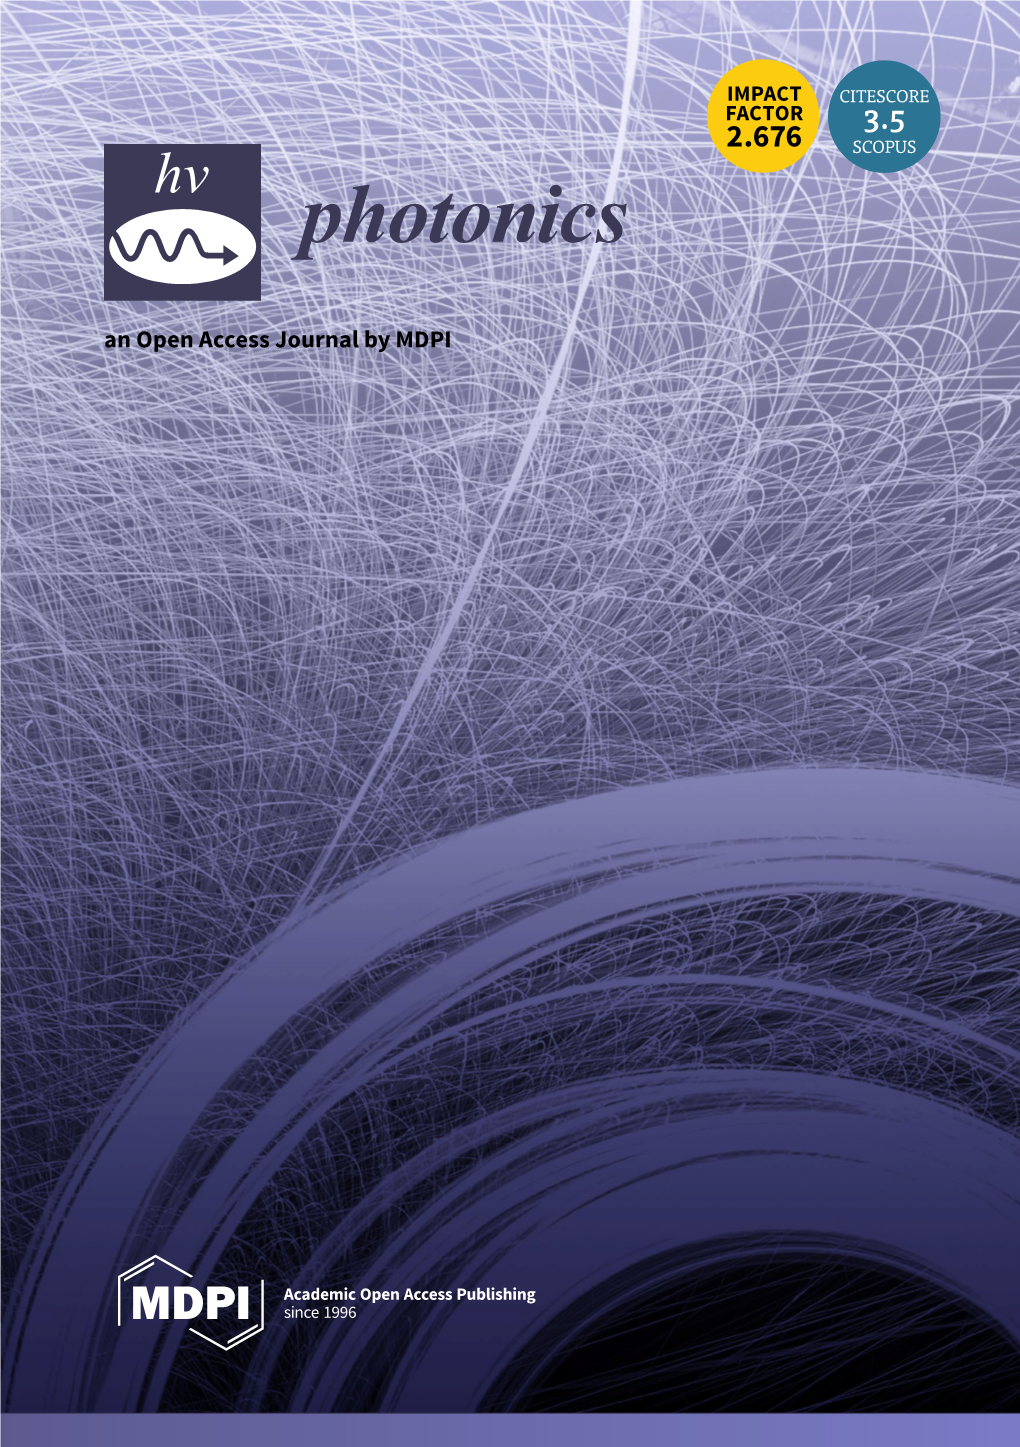 Photonics an Open Access Journal by MDPI